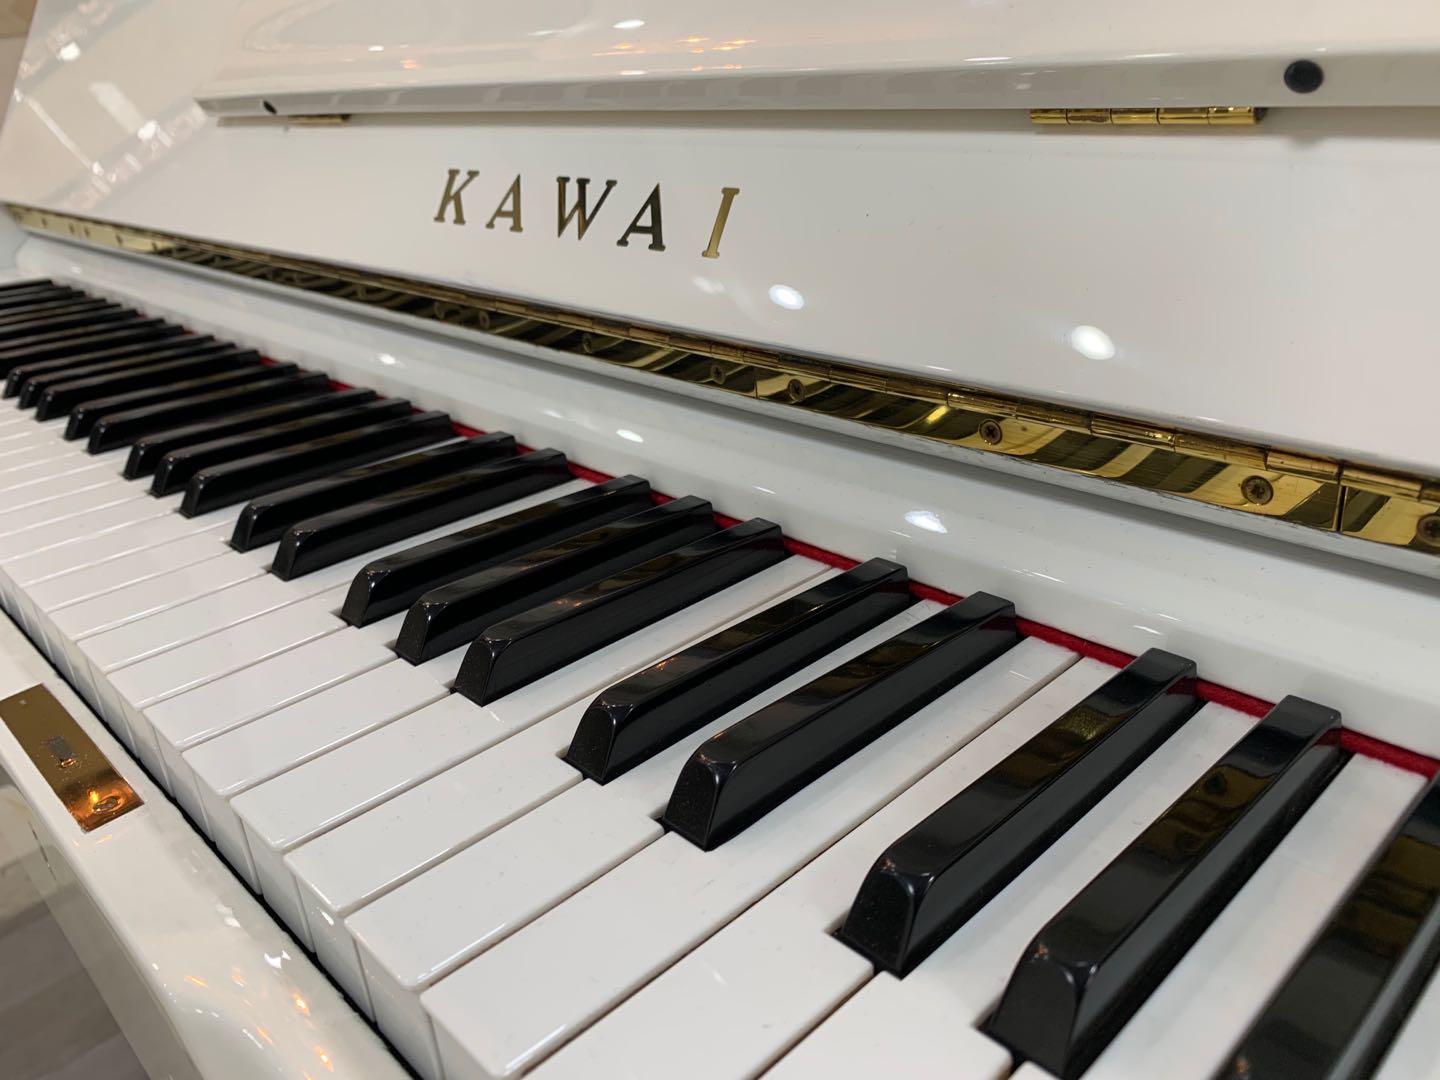 日本原装进口卡瓦伊kawai 练习演奏考级钢琴 k353